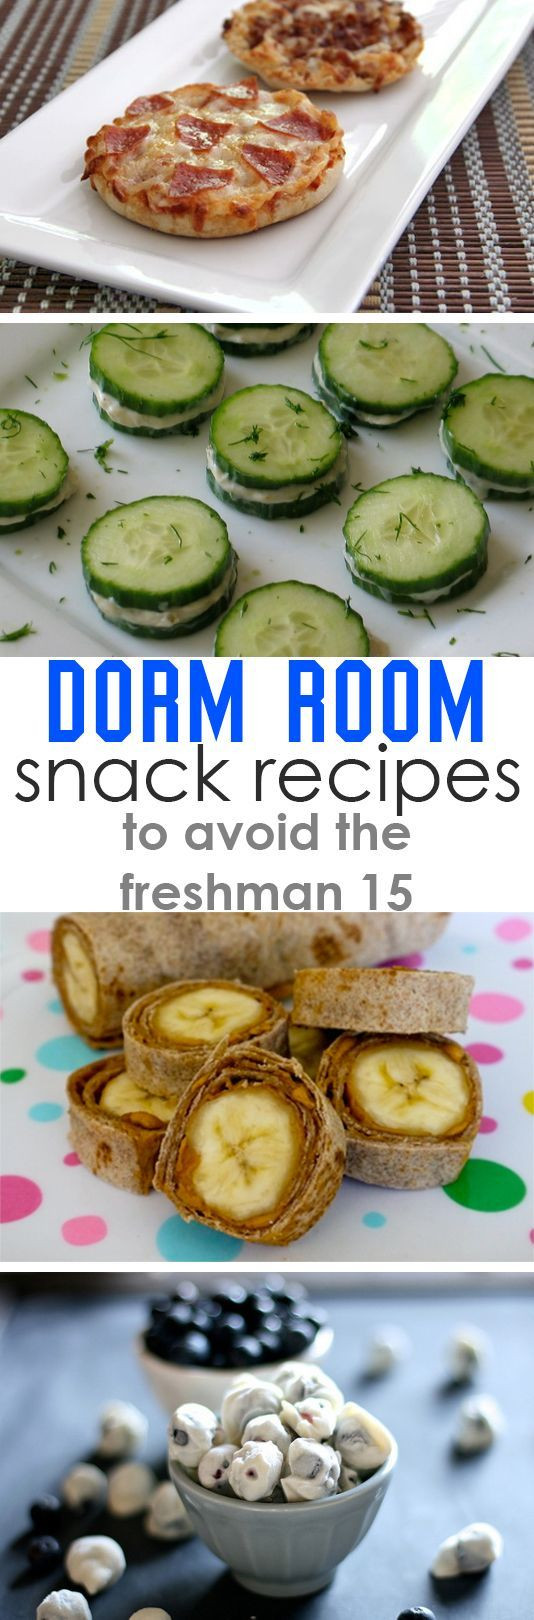 Healthy Dorm Room Snacks
 Healthy Dorm Room Snack Recipes